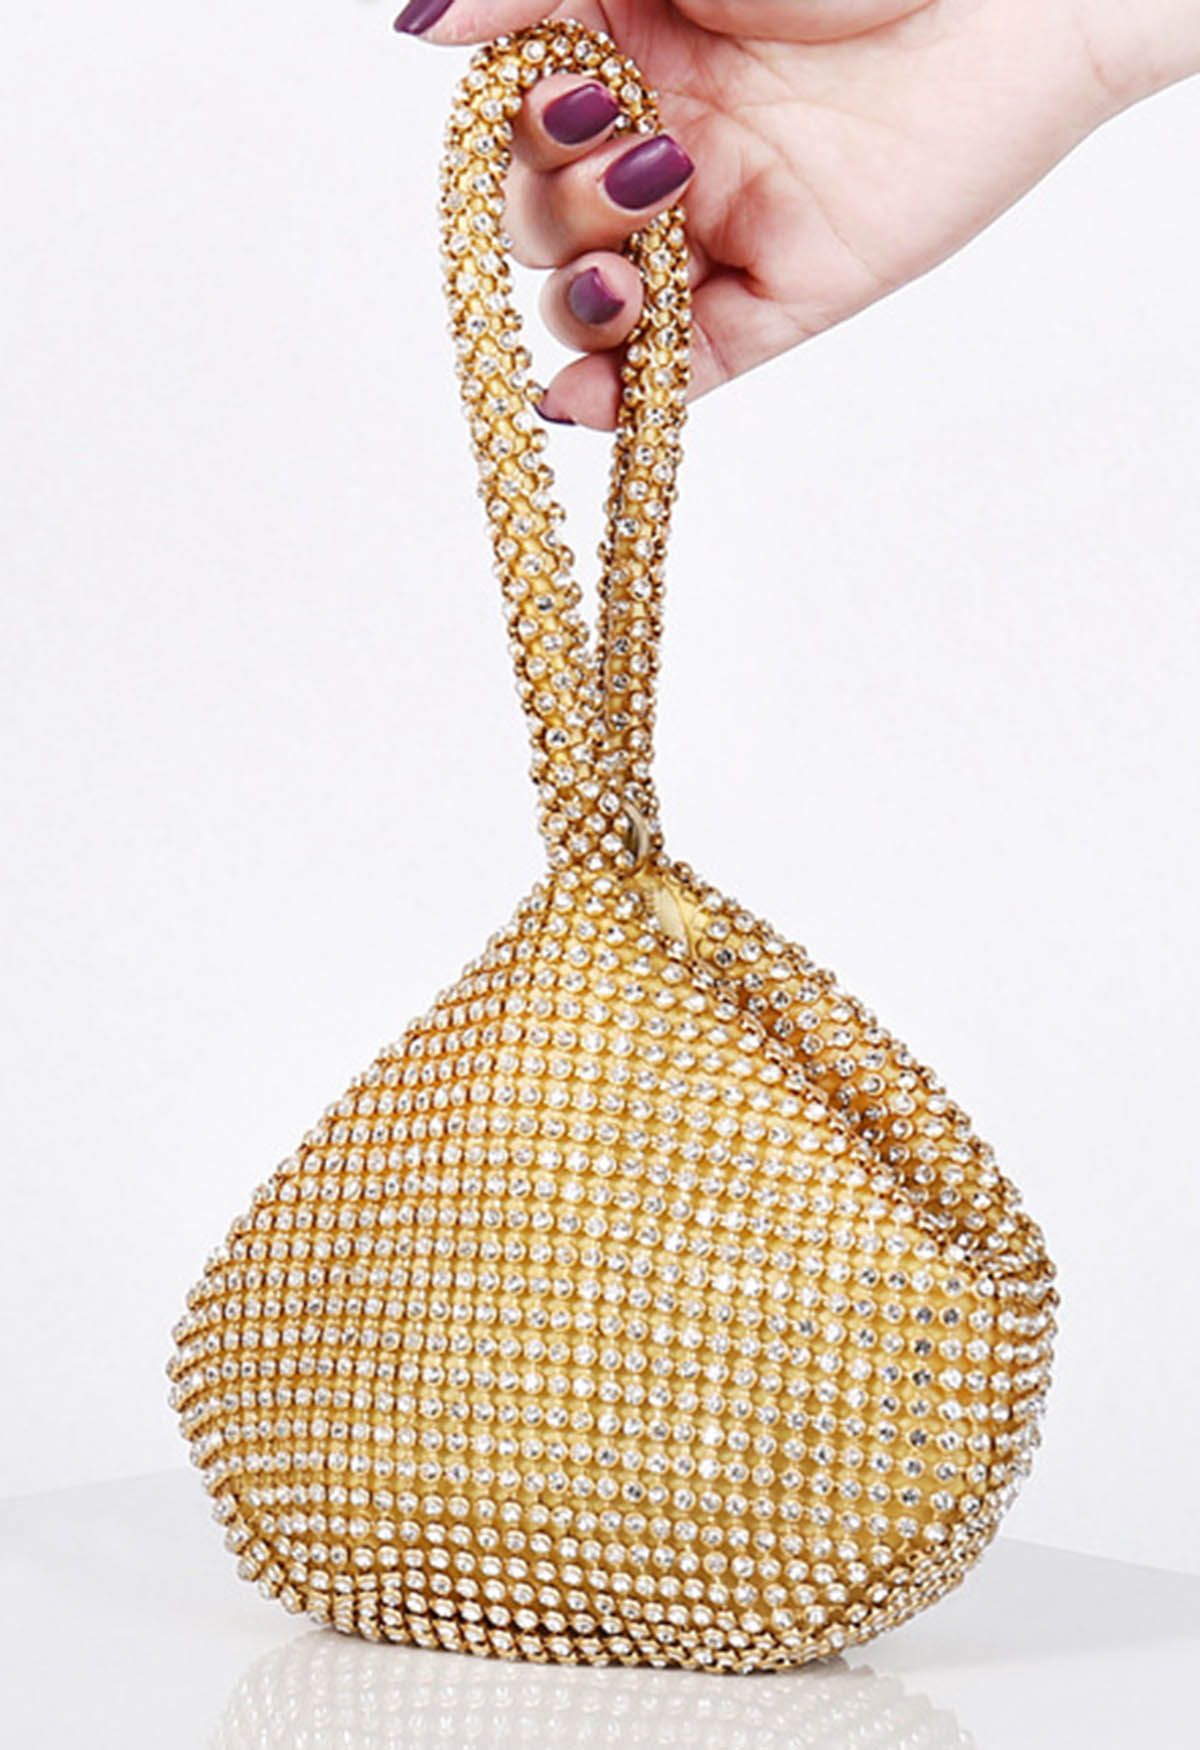 حقيبة يد صغيرة من حجر الراين بالكامل باللون الذهبي